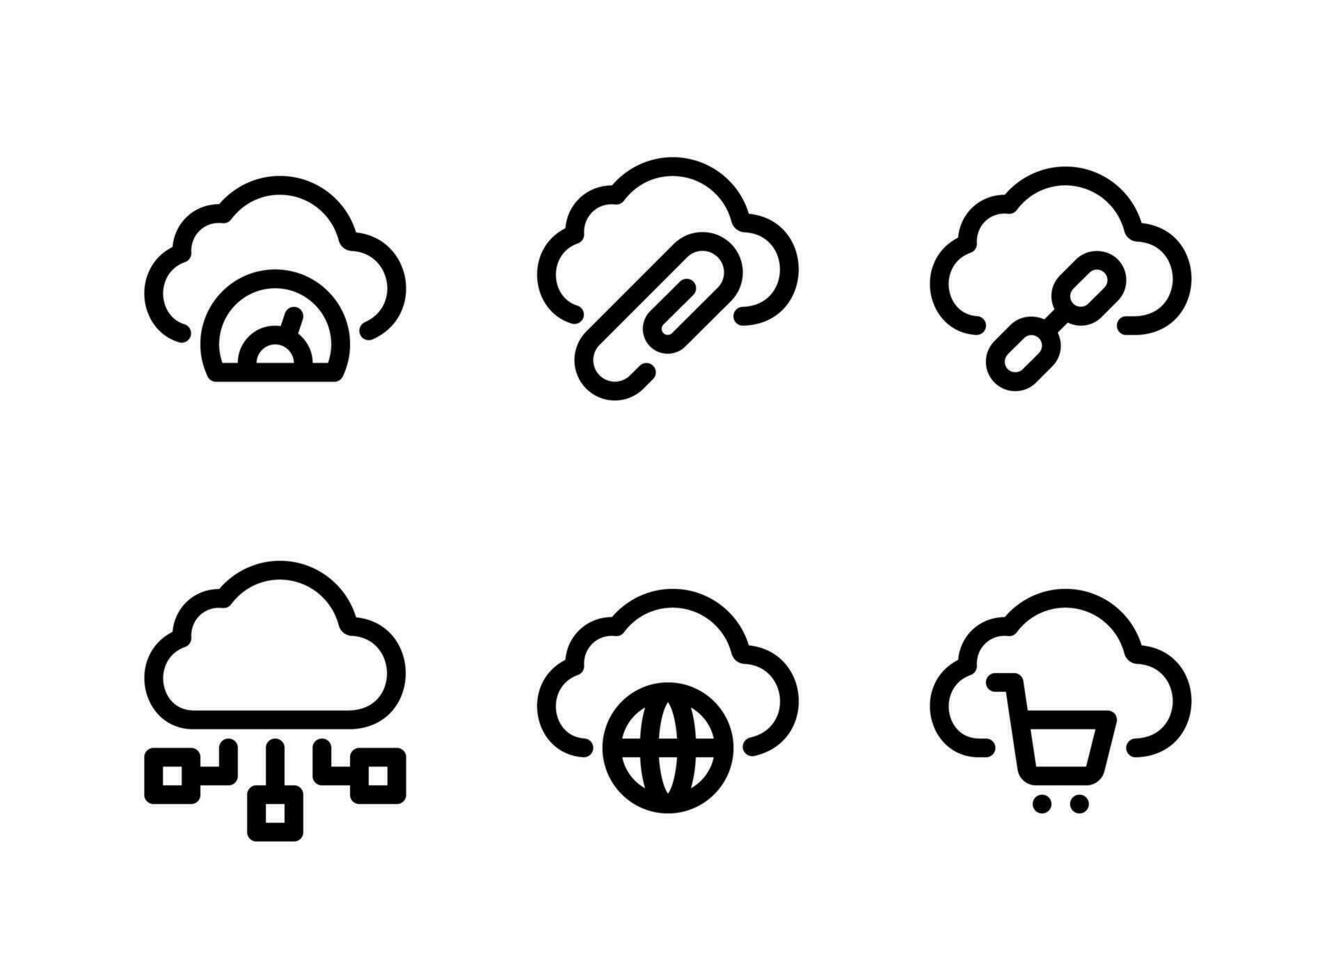 semplice set di icone di linee vettoriali relative al cloud computing. contiene icone come prestazioni, allegati, link e altro.